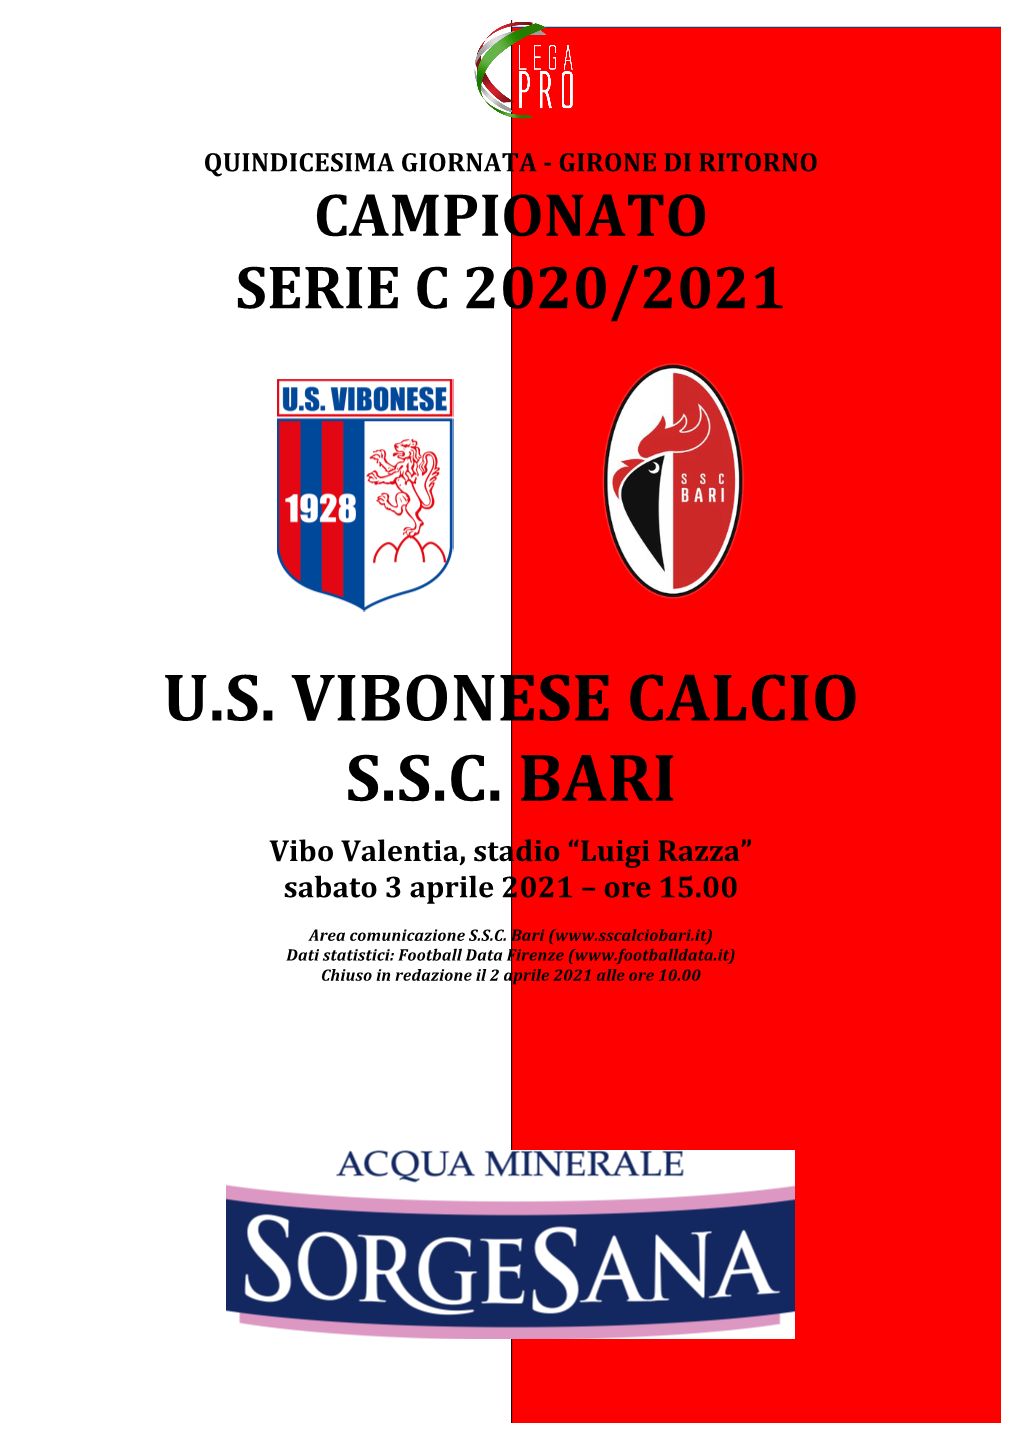 U.S. Vibonese Calcio S.S.C. Bari